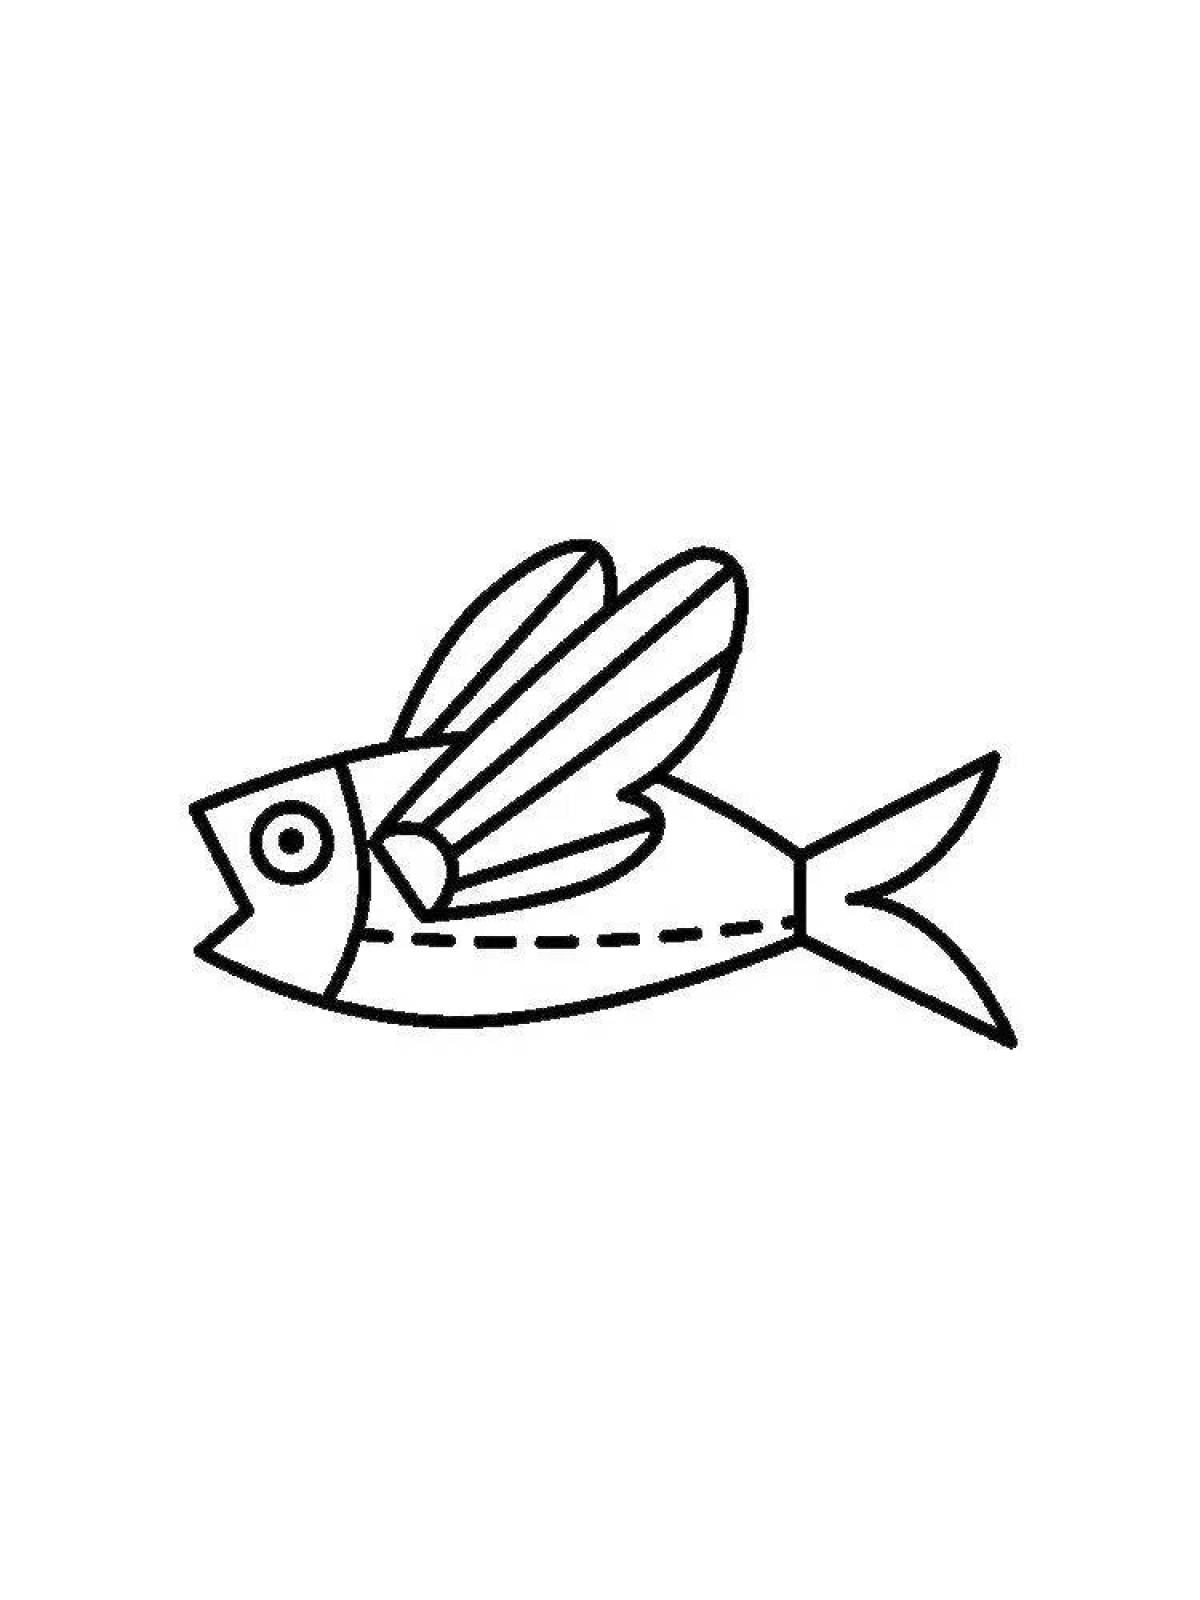 Фото Раскраска экзотическая летучая рыба